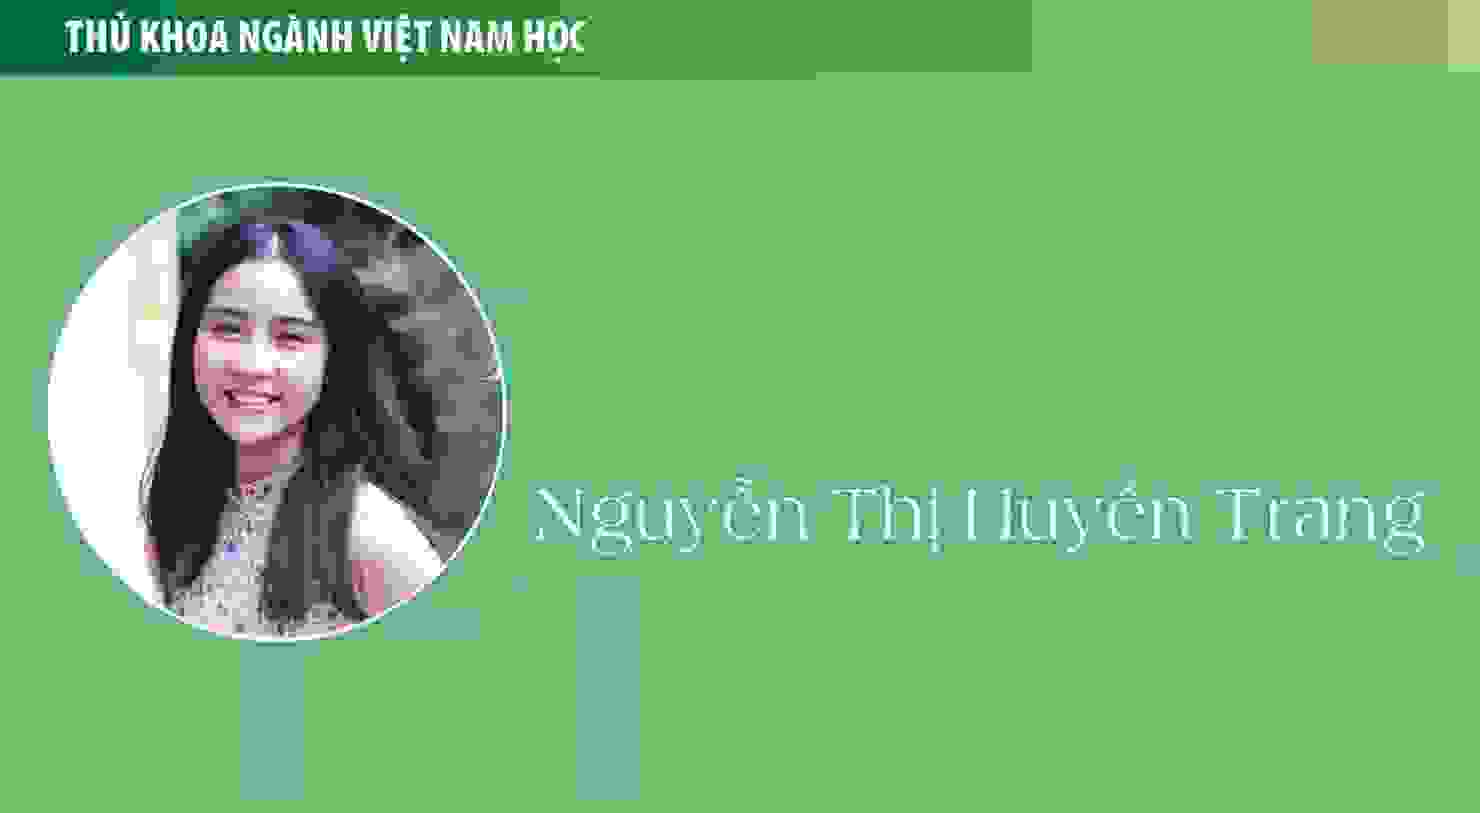 Thủ khoa Nguyễn Thị Huyền Trang (ngành Việt Nam học): Thưởng thức cuộc sống qua những chuyến đi